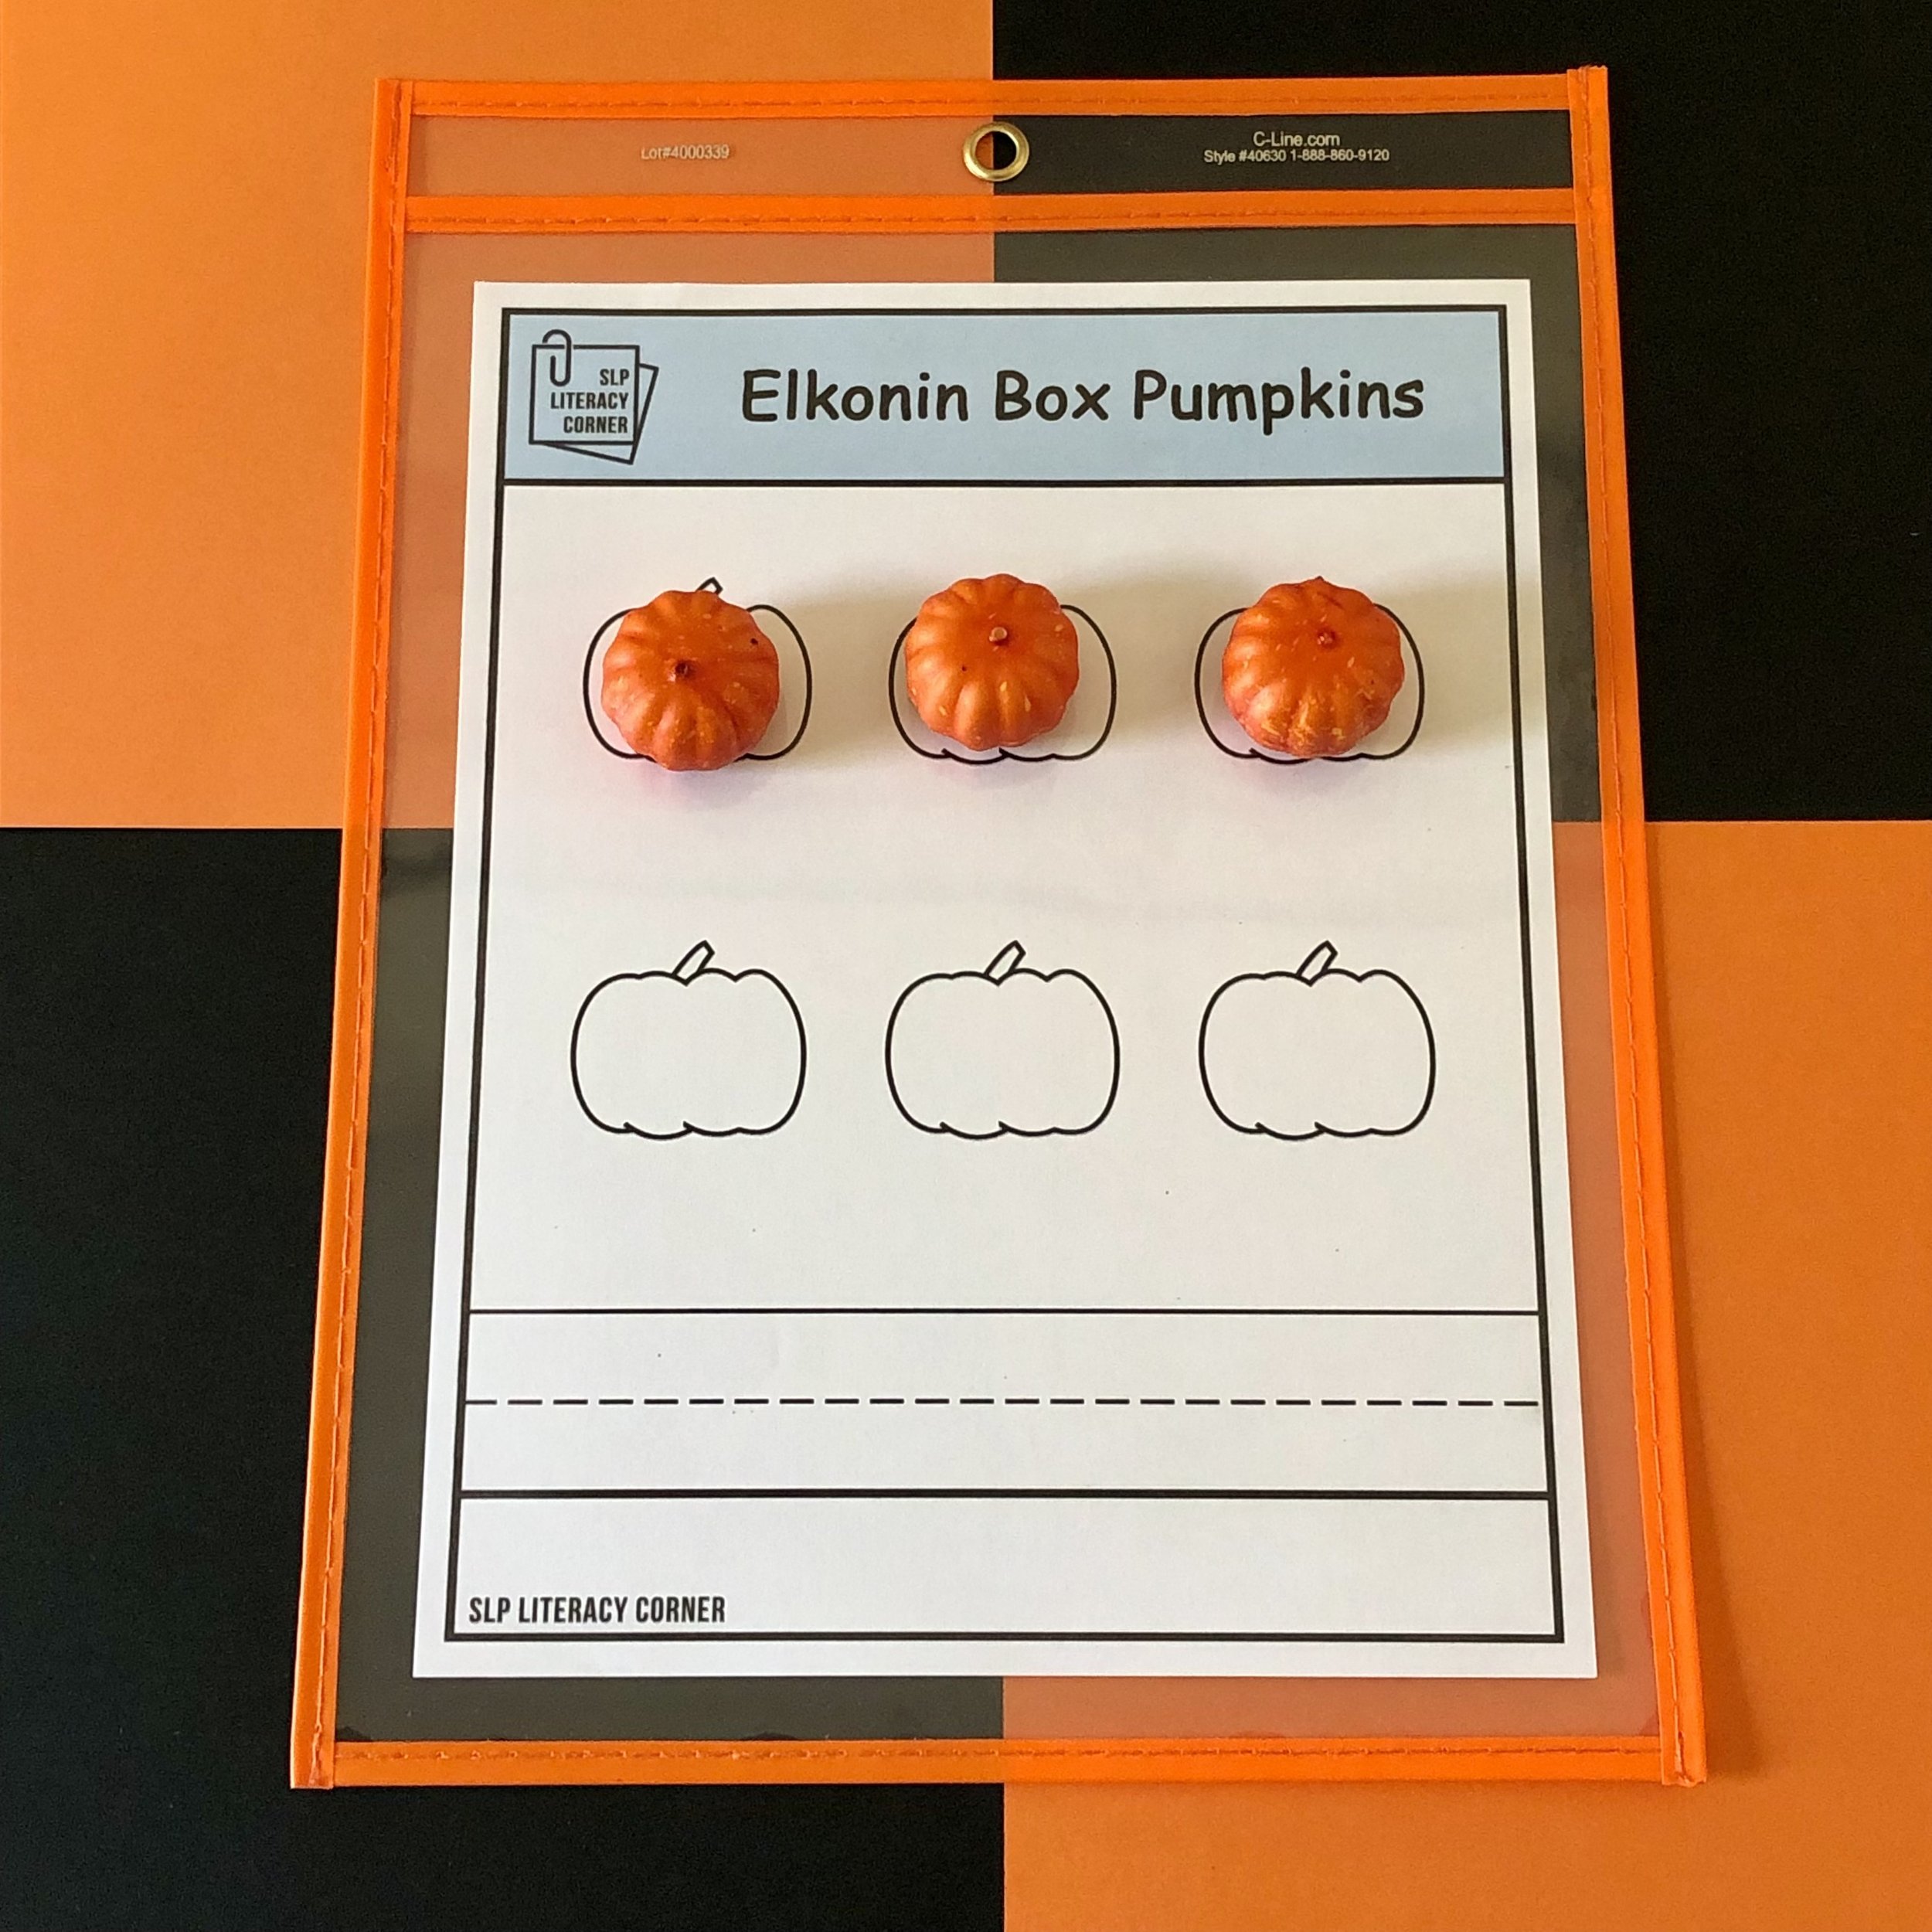 SLP Literacy Corner Elkonin Box Pumpkins 1.jpg